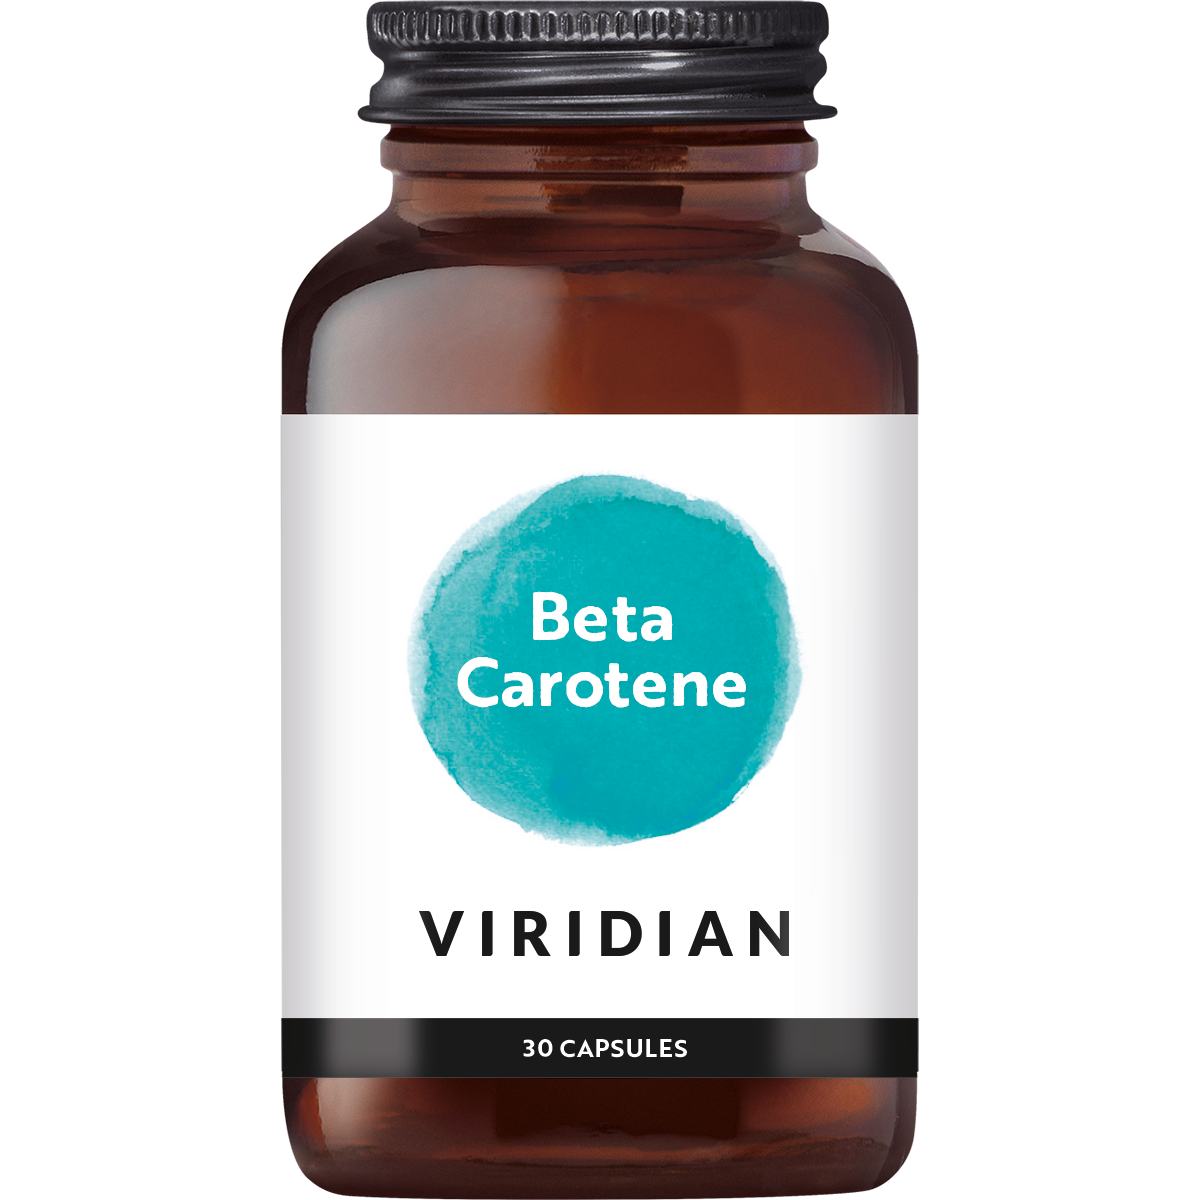 Viridian Beta carotene (30 stuks)